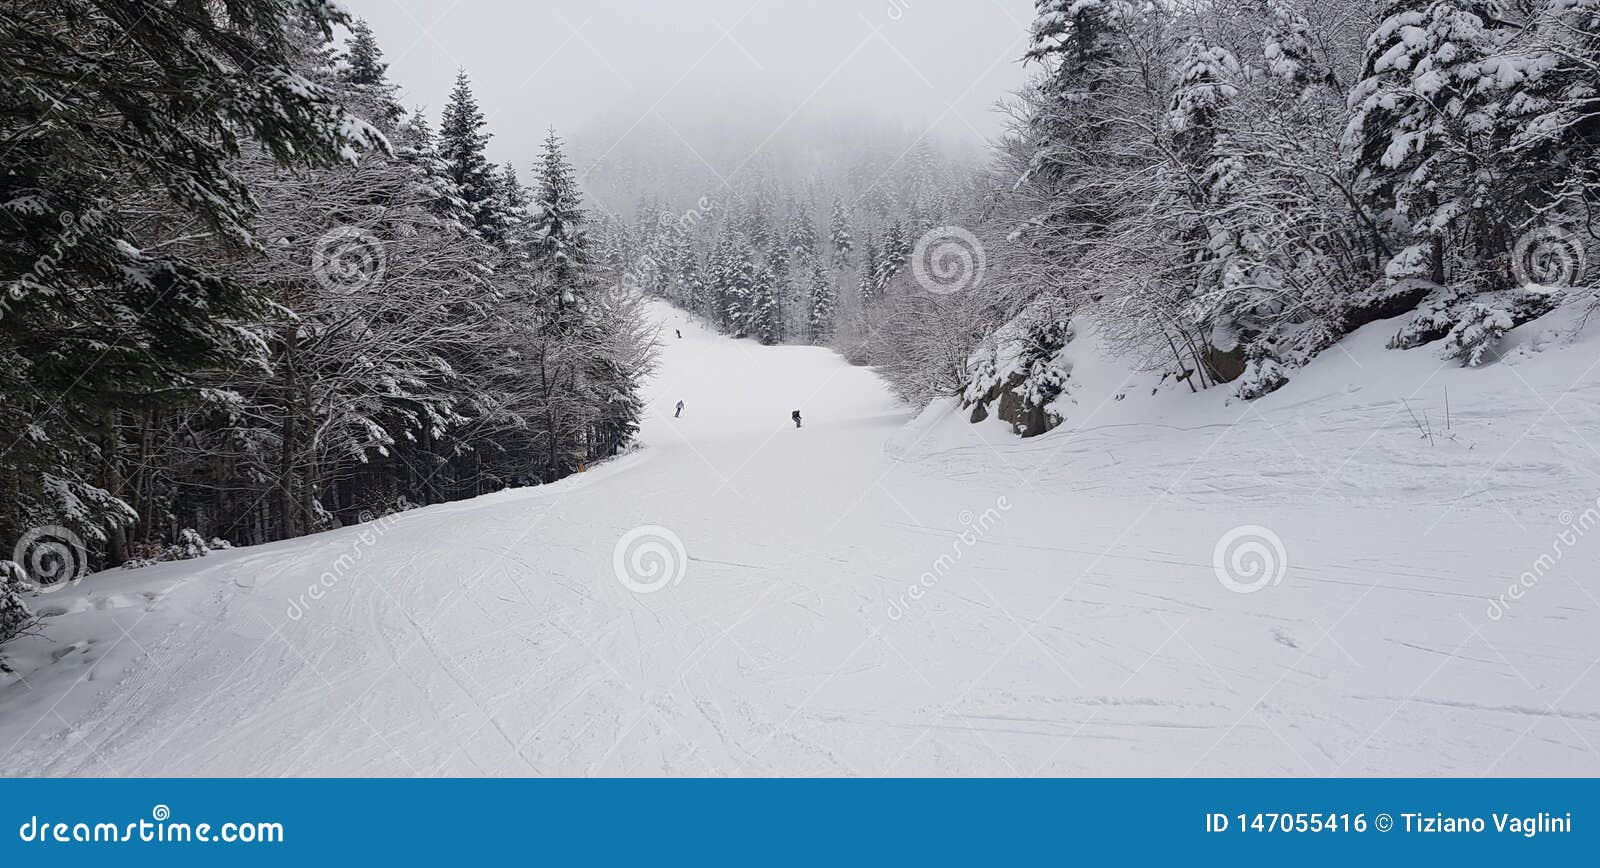 skiing at abetone